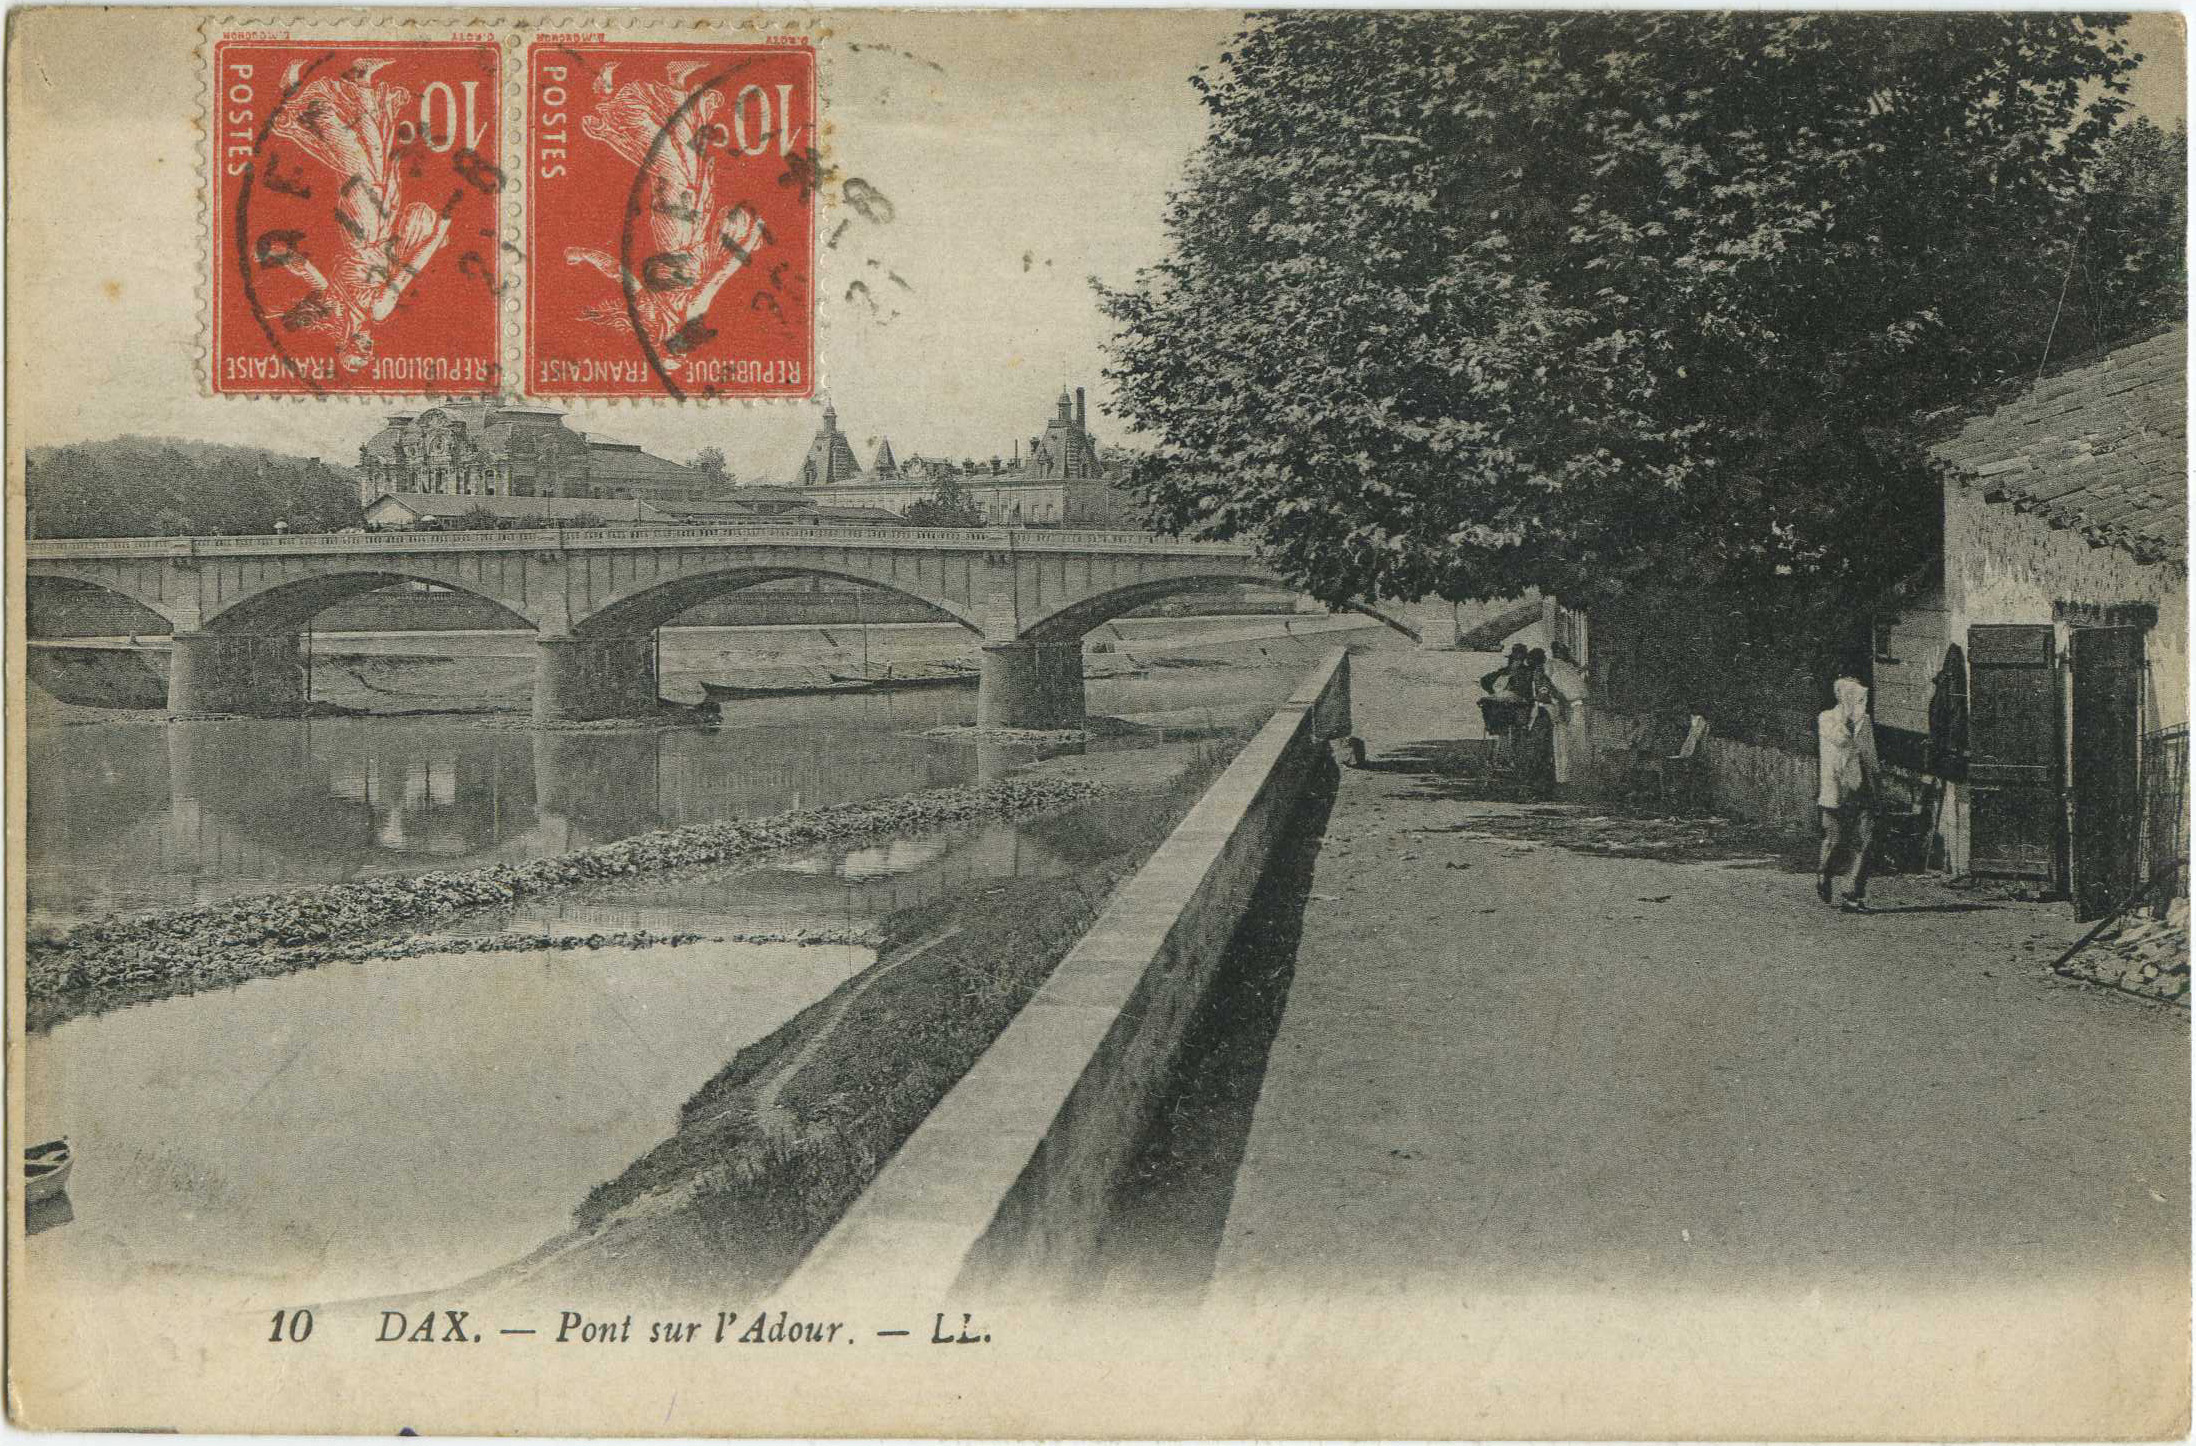 Dax - Pont sur l'Adour.